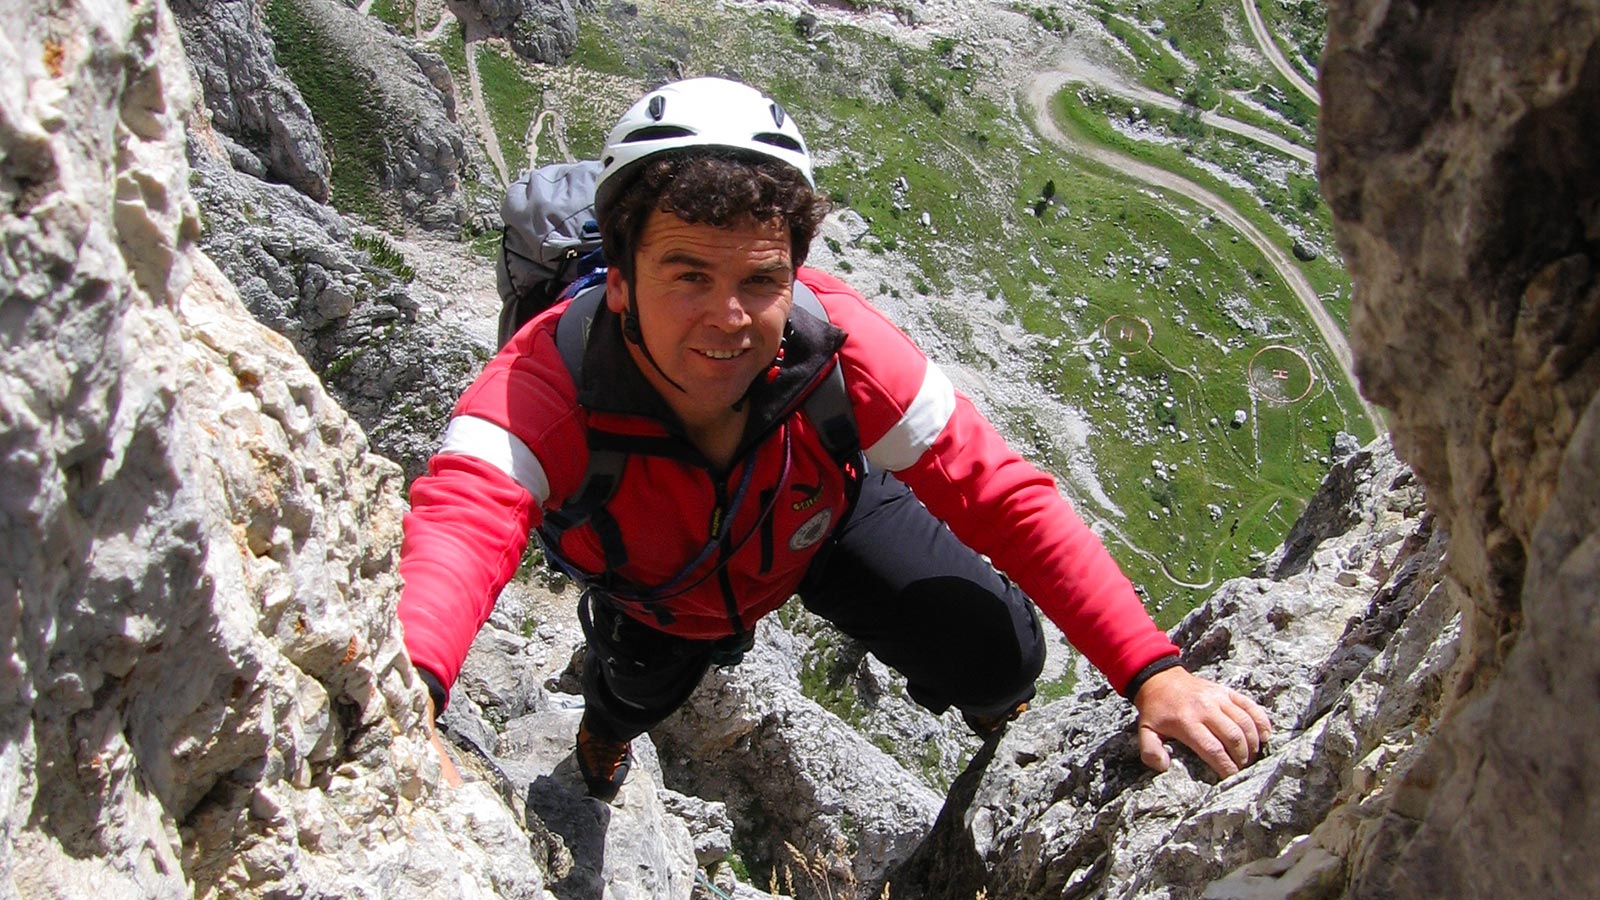 Kletterer an einem Felsen mit Ausrüstung, Helm und Sicherung